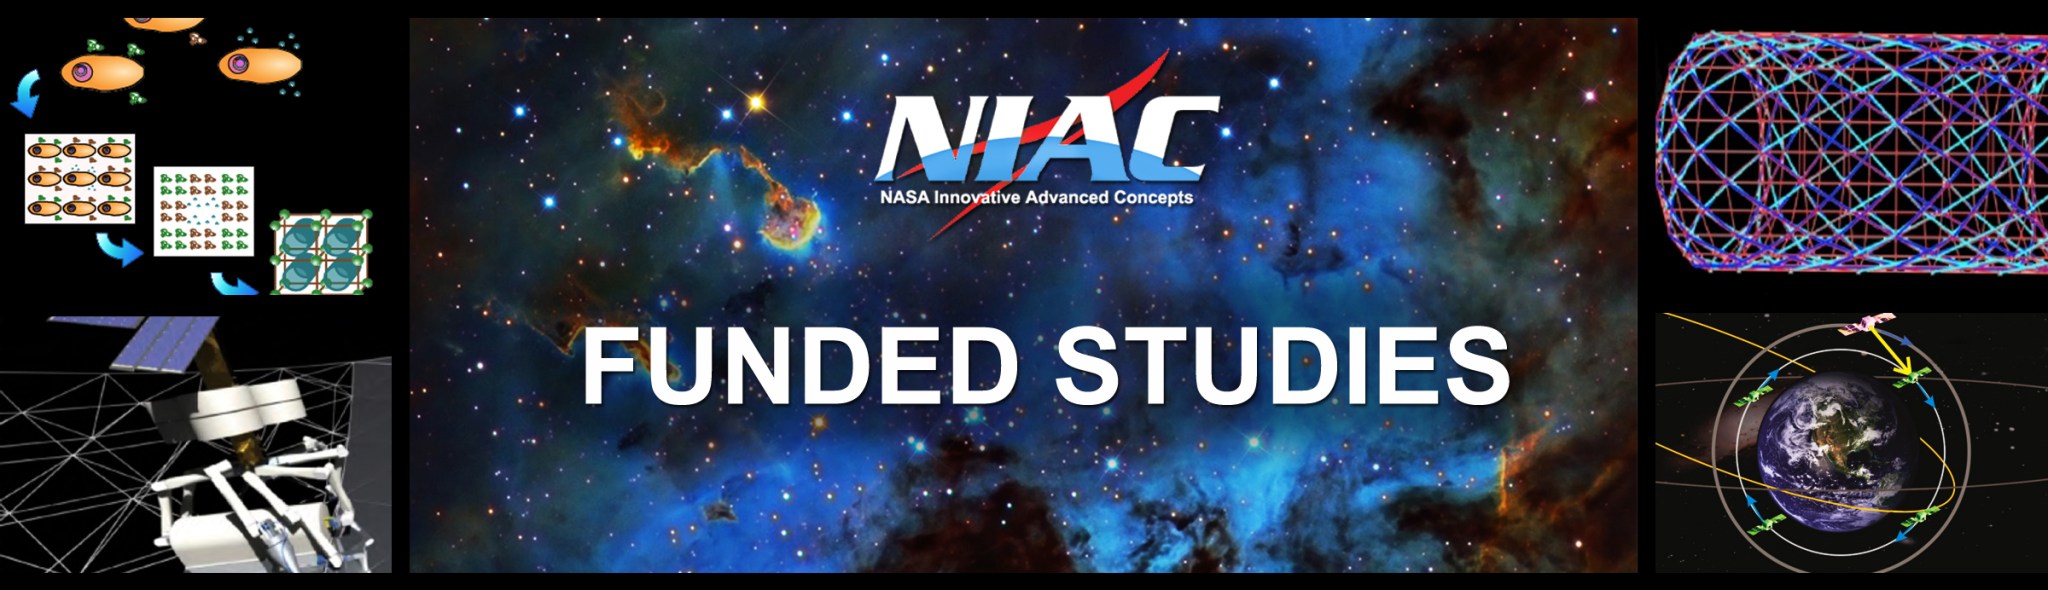 NIAC Funded Studies